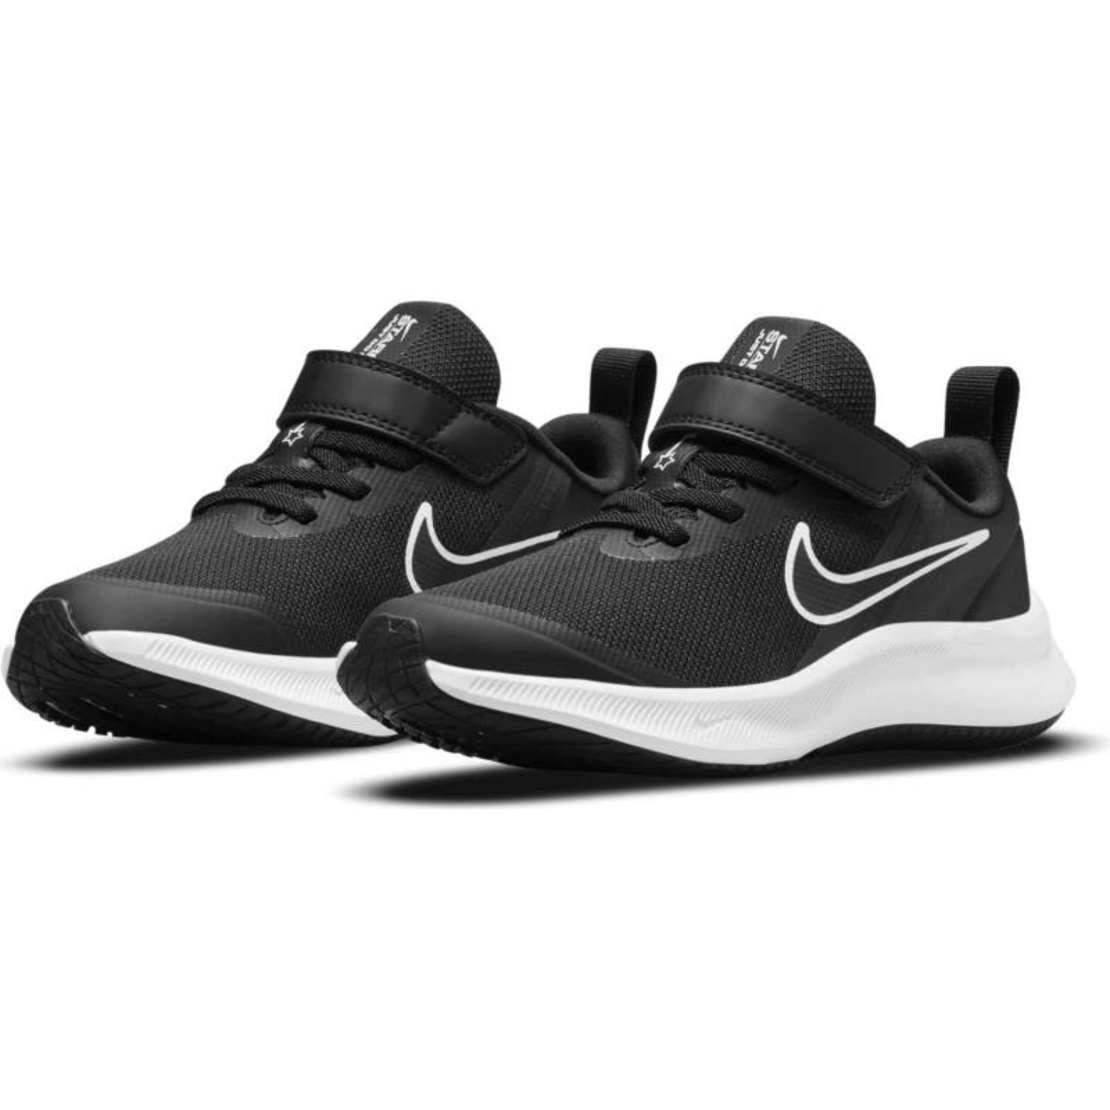 נעלי נייק לילדים | Nike Star Runner 3